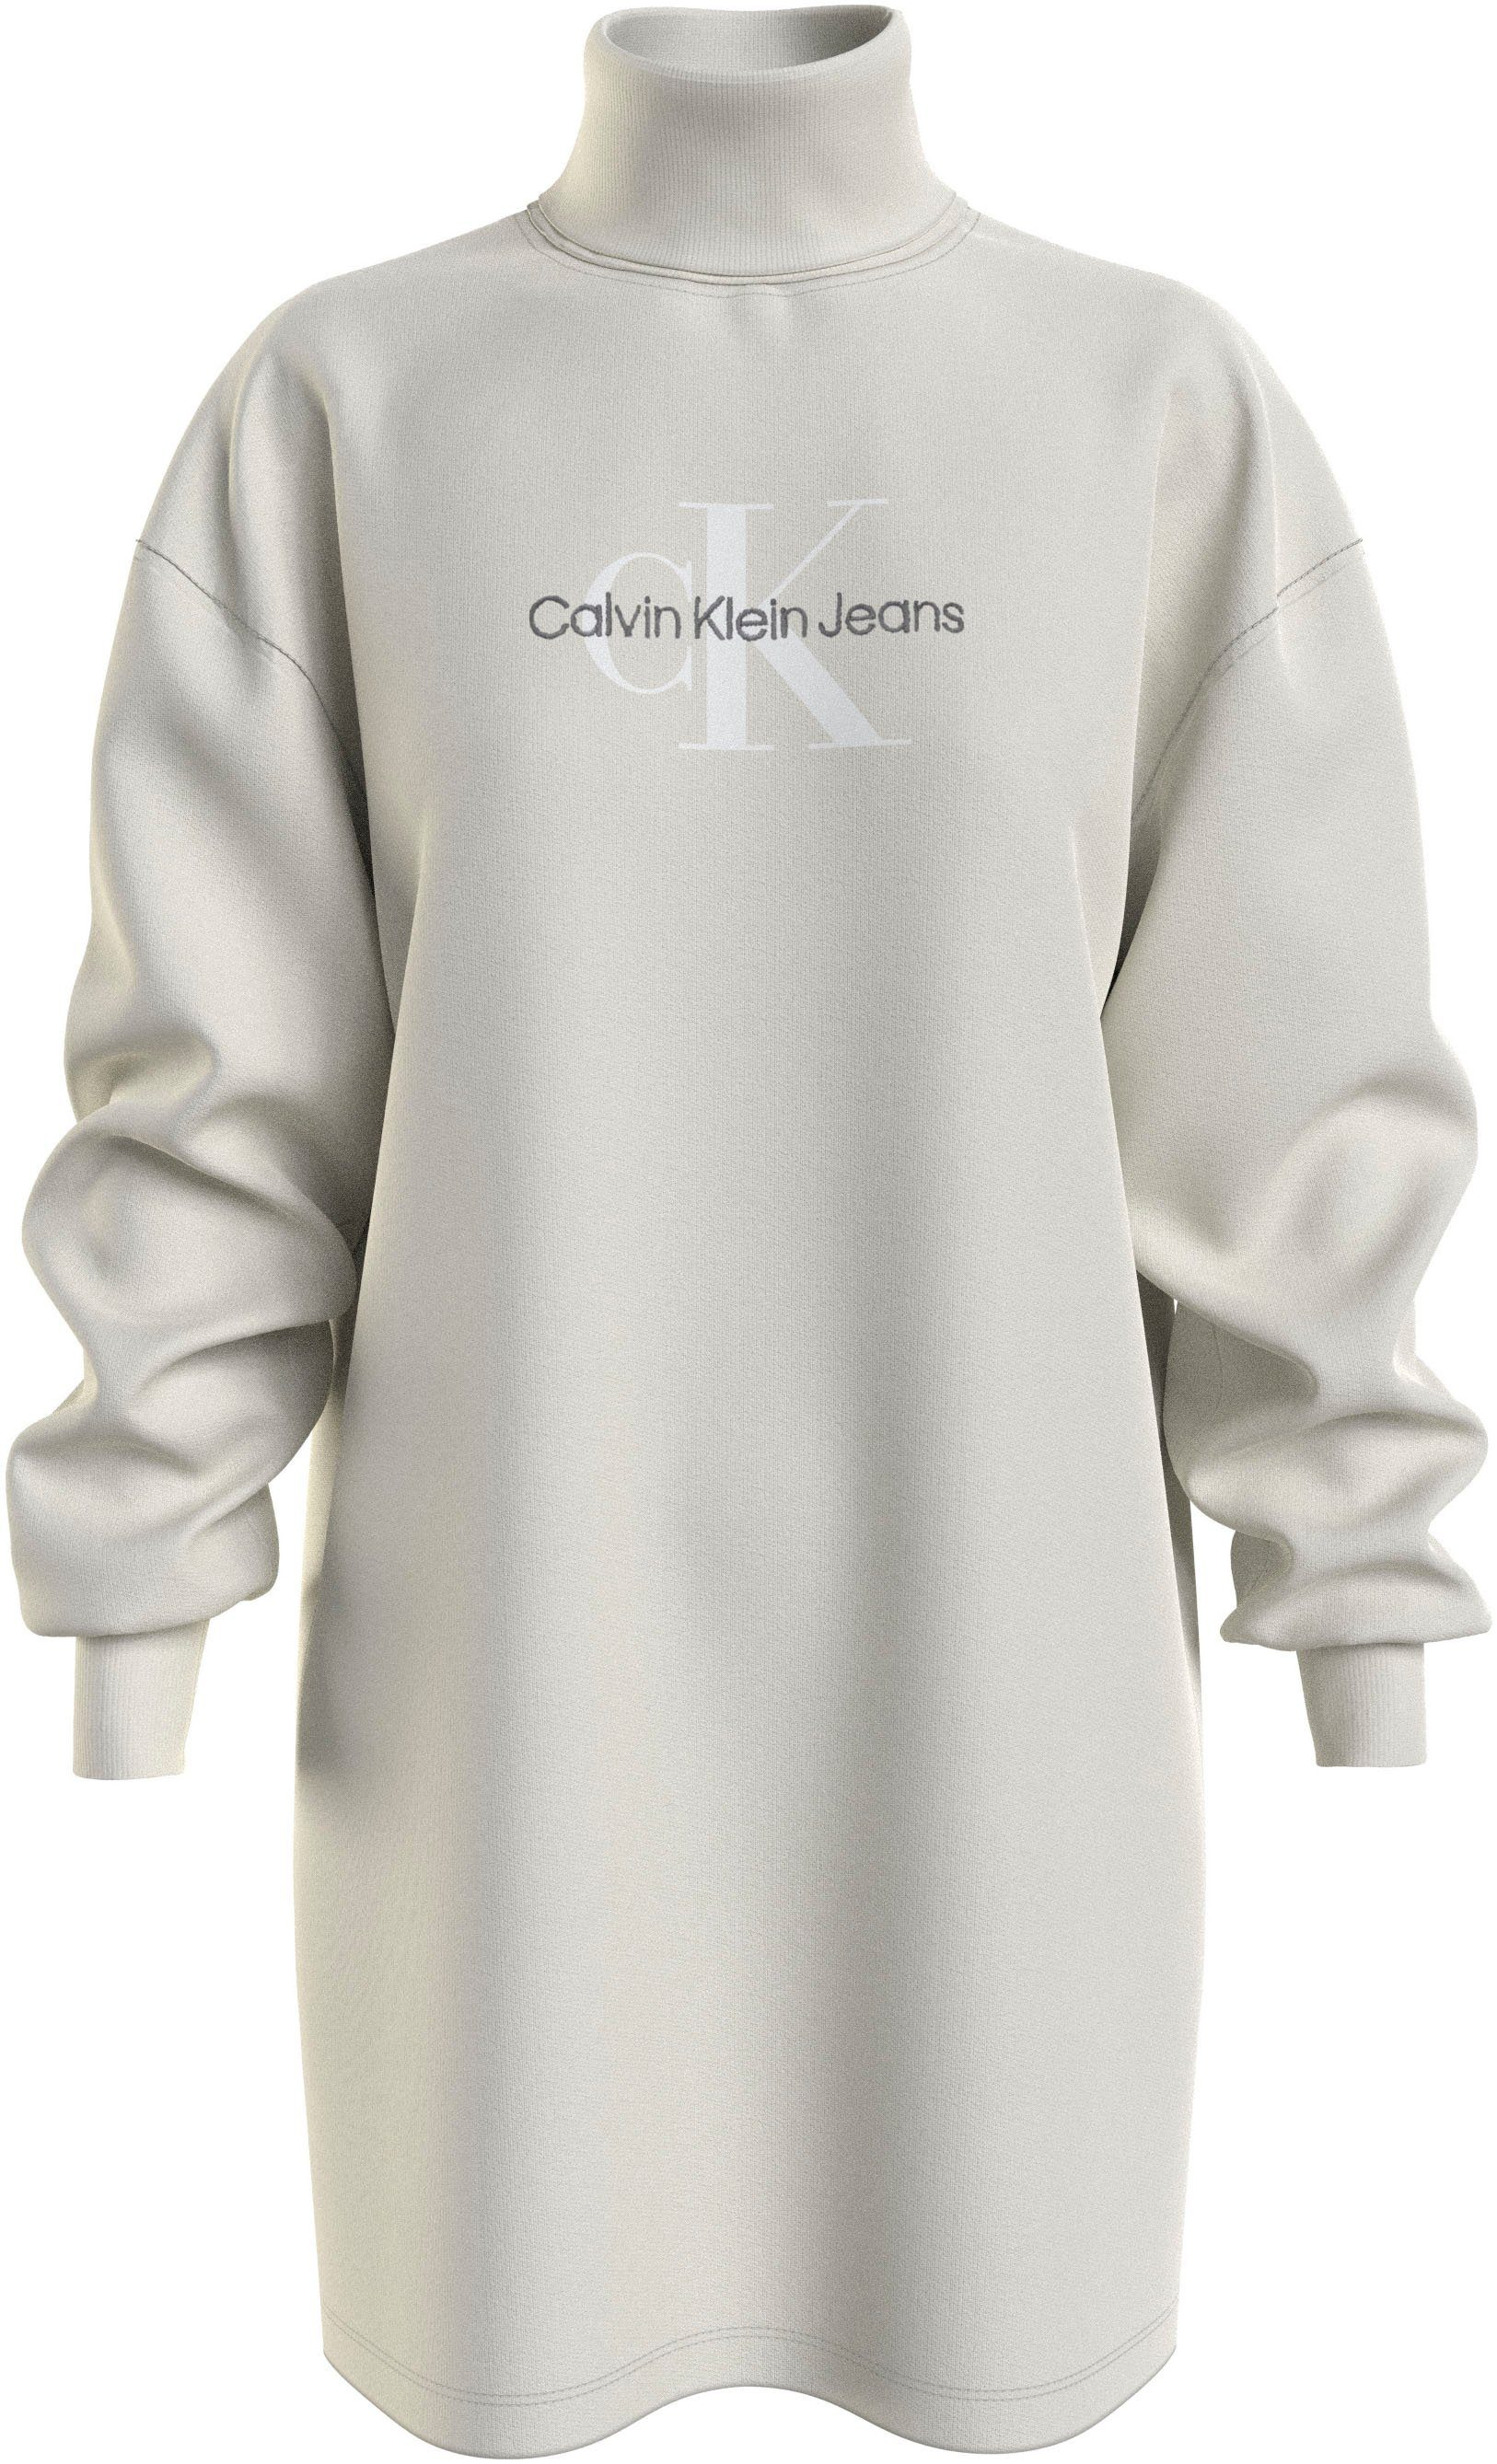 Calvin Klein Jeans Sweatkleid ecru DRESS NECK ROLL MONOLOGO